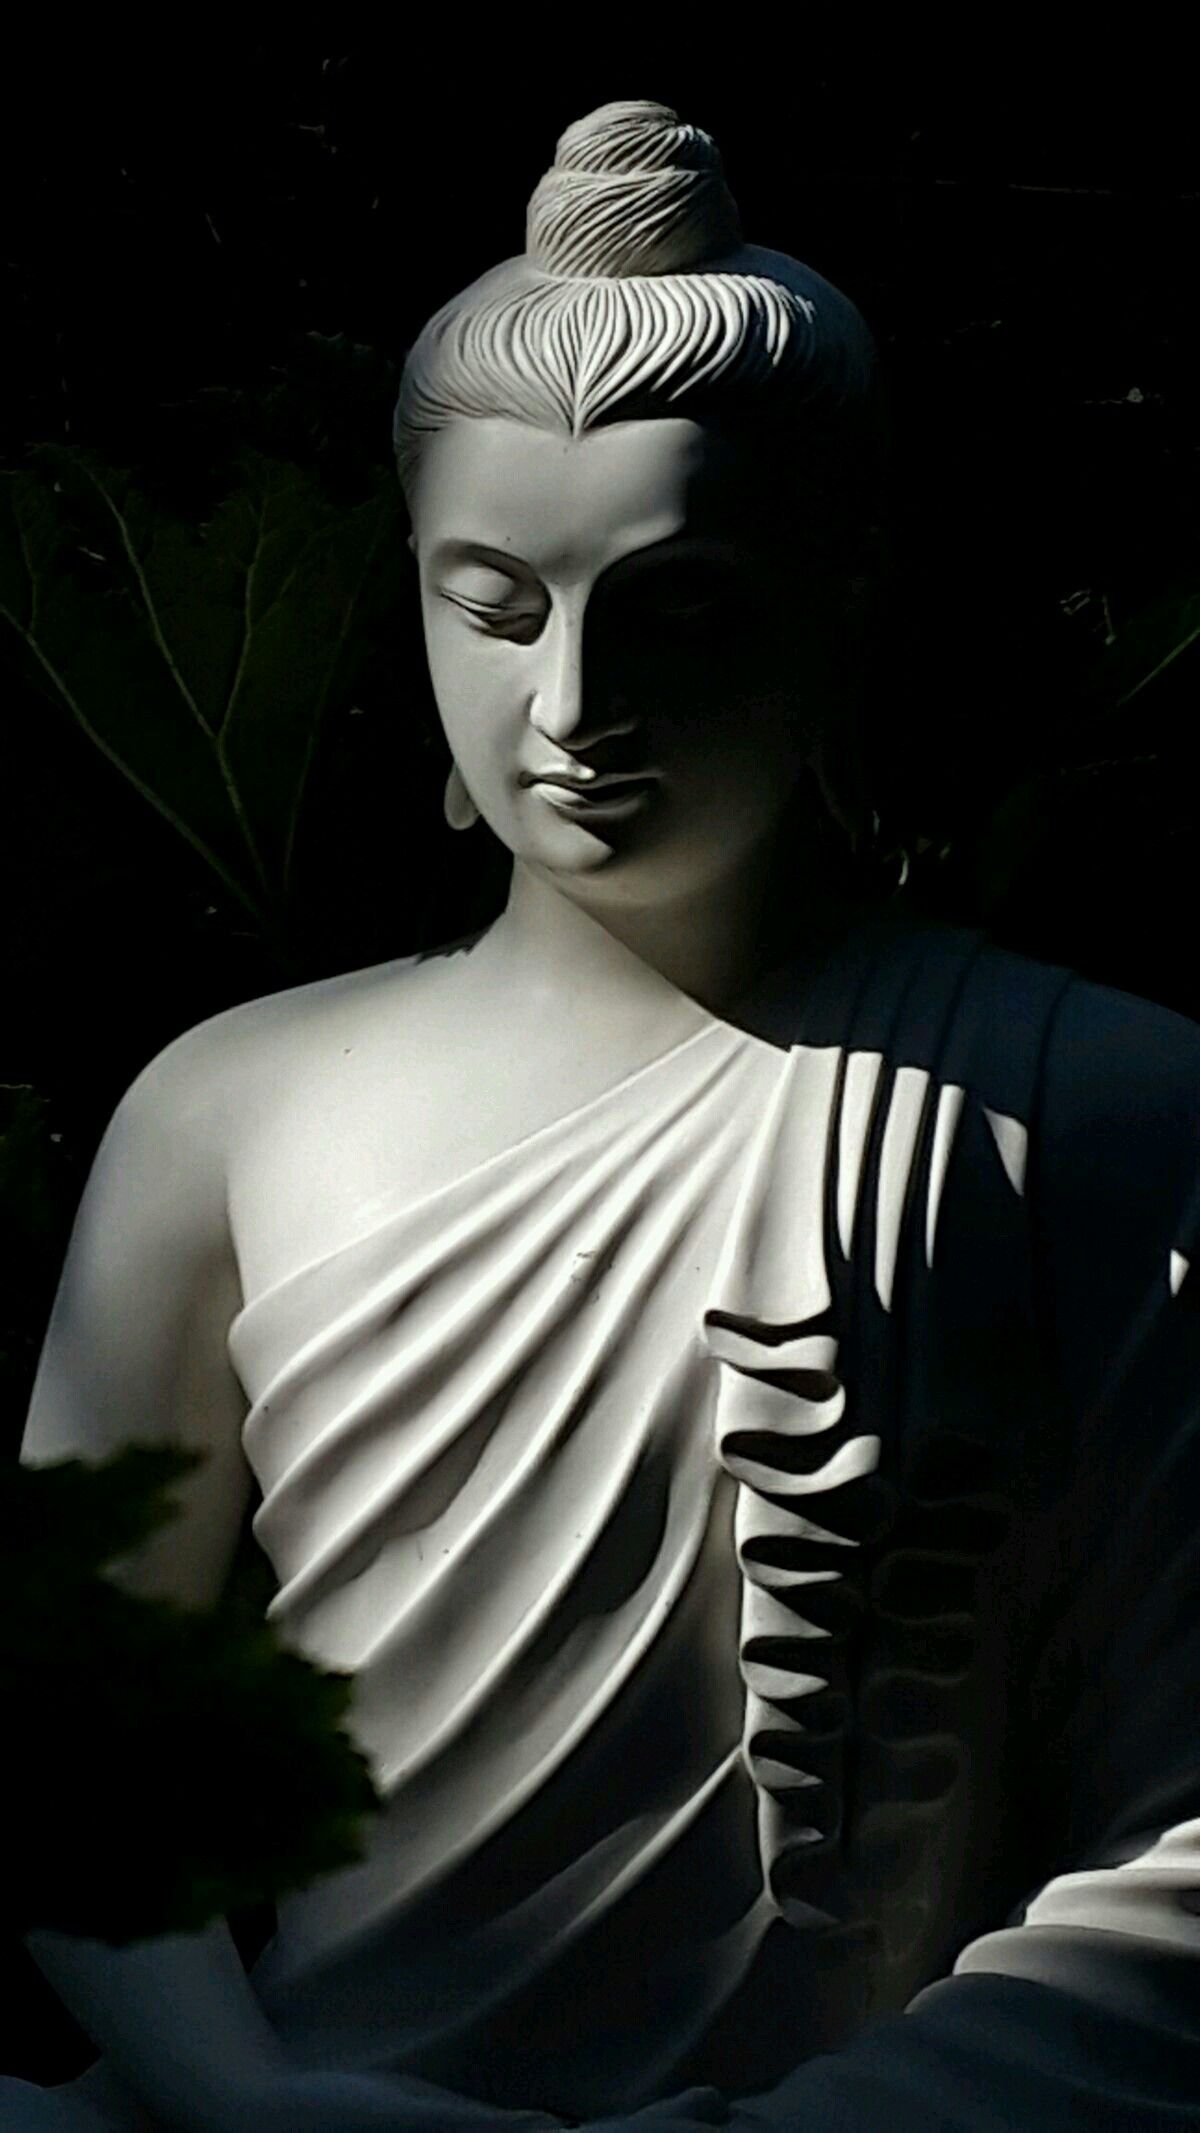 Thưởng thức những hình ảnh Phật A Di Đà, bạn sẽ được dẫn đến một không gian hiền hòa và đầy tình thương. Sự ấm áp và an yên của nhân tính Phật sẽ thổi nhẹ vào tâm hồn bạn, dẫn đến một sự khai mở và sự giải thoát đáng kính.